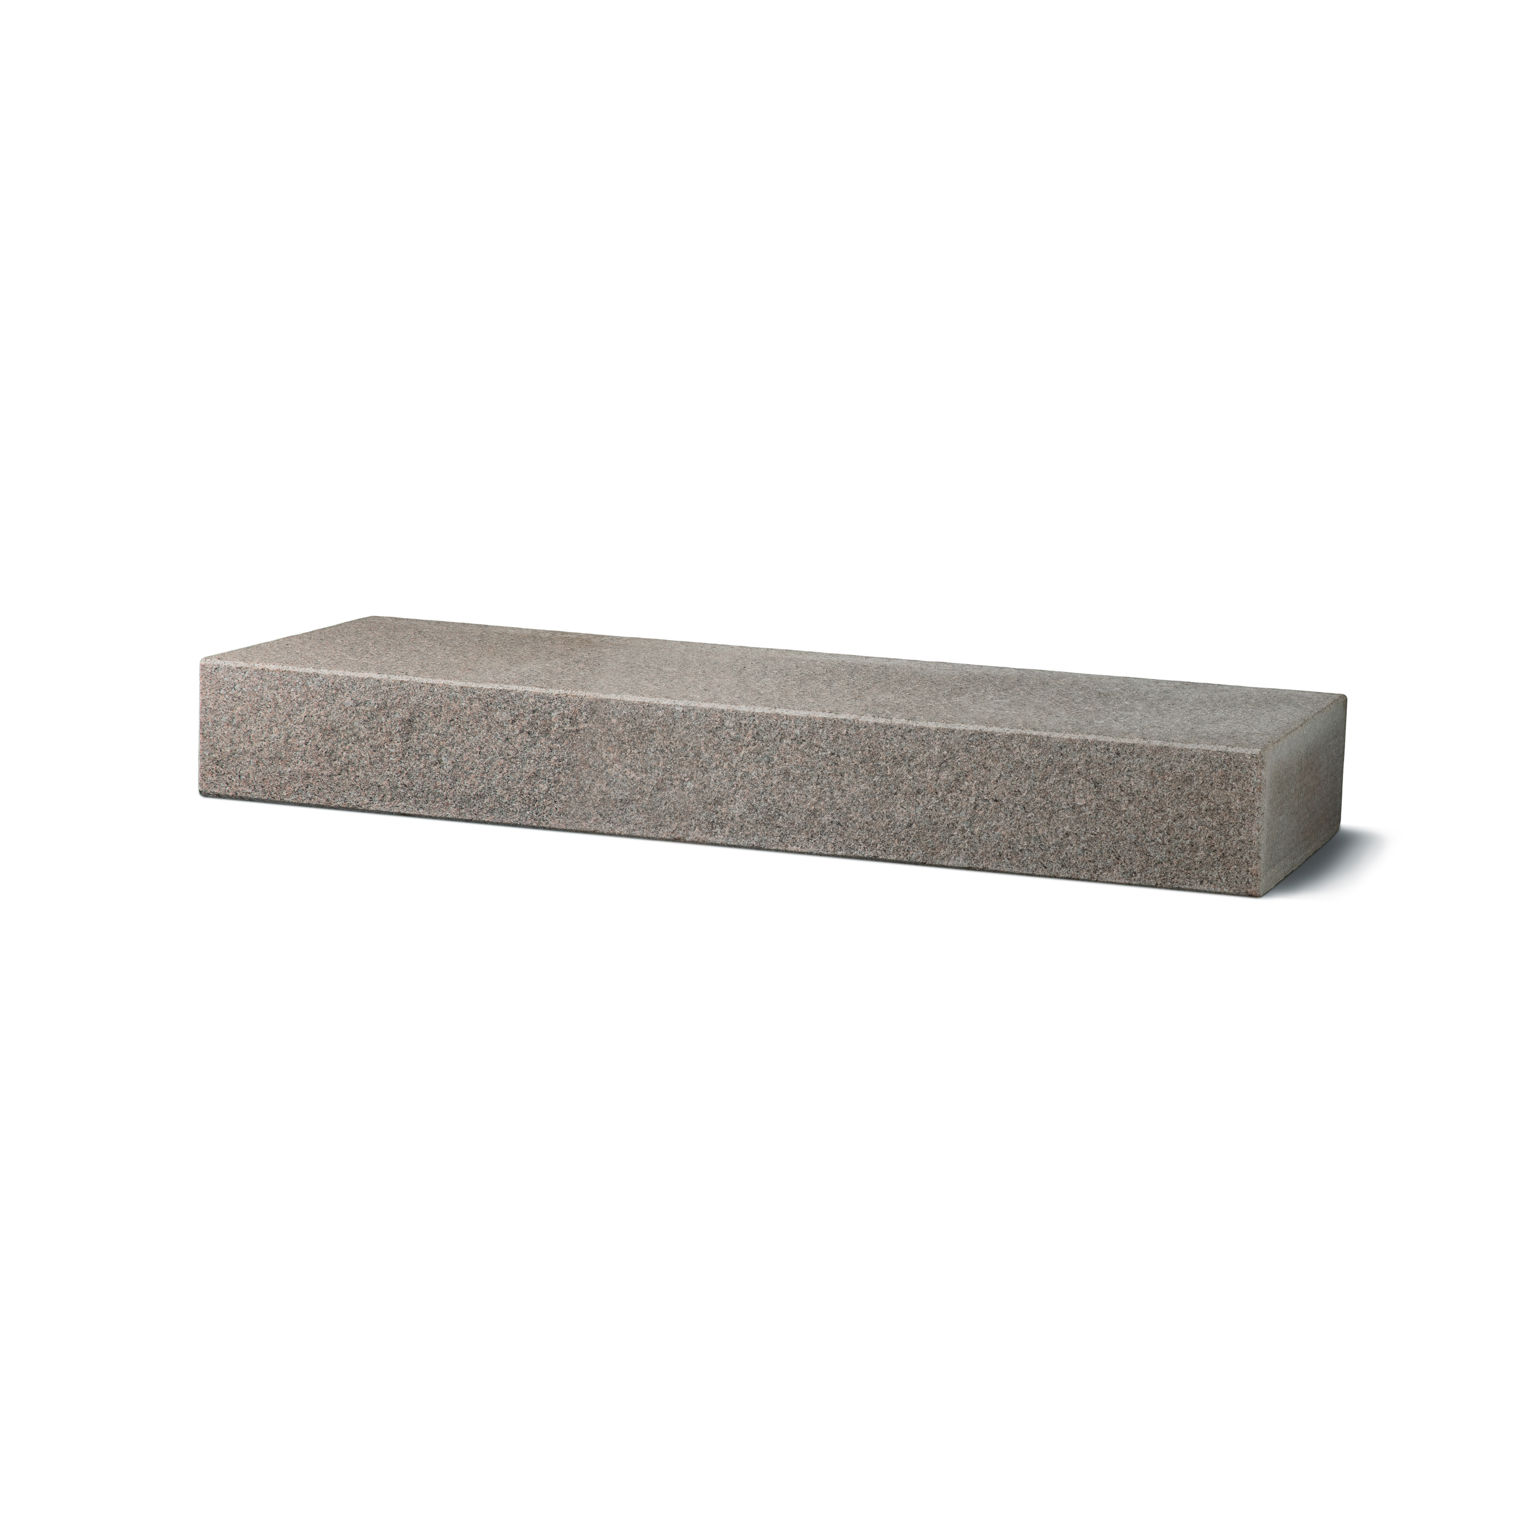 Produktbild på blocksteg i granit med flammad topp och front;i måtten 1500x350x1500 mm och i färgen Bohus grå.